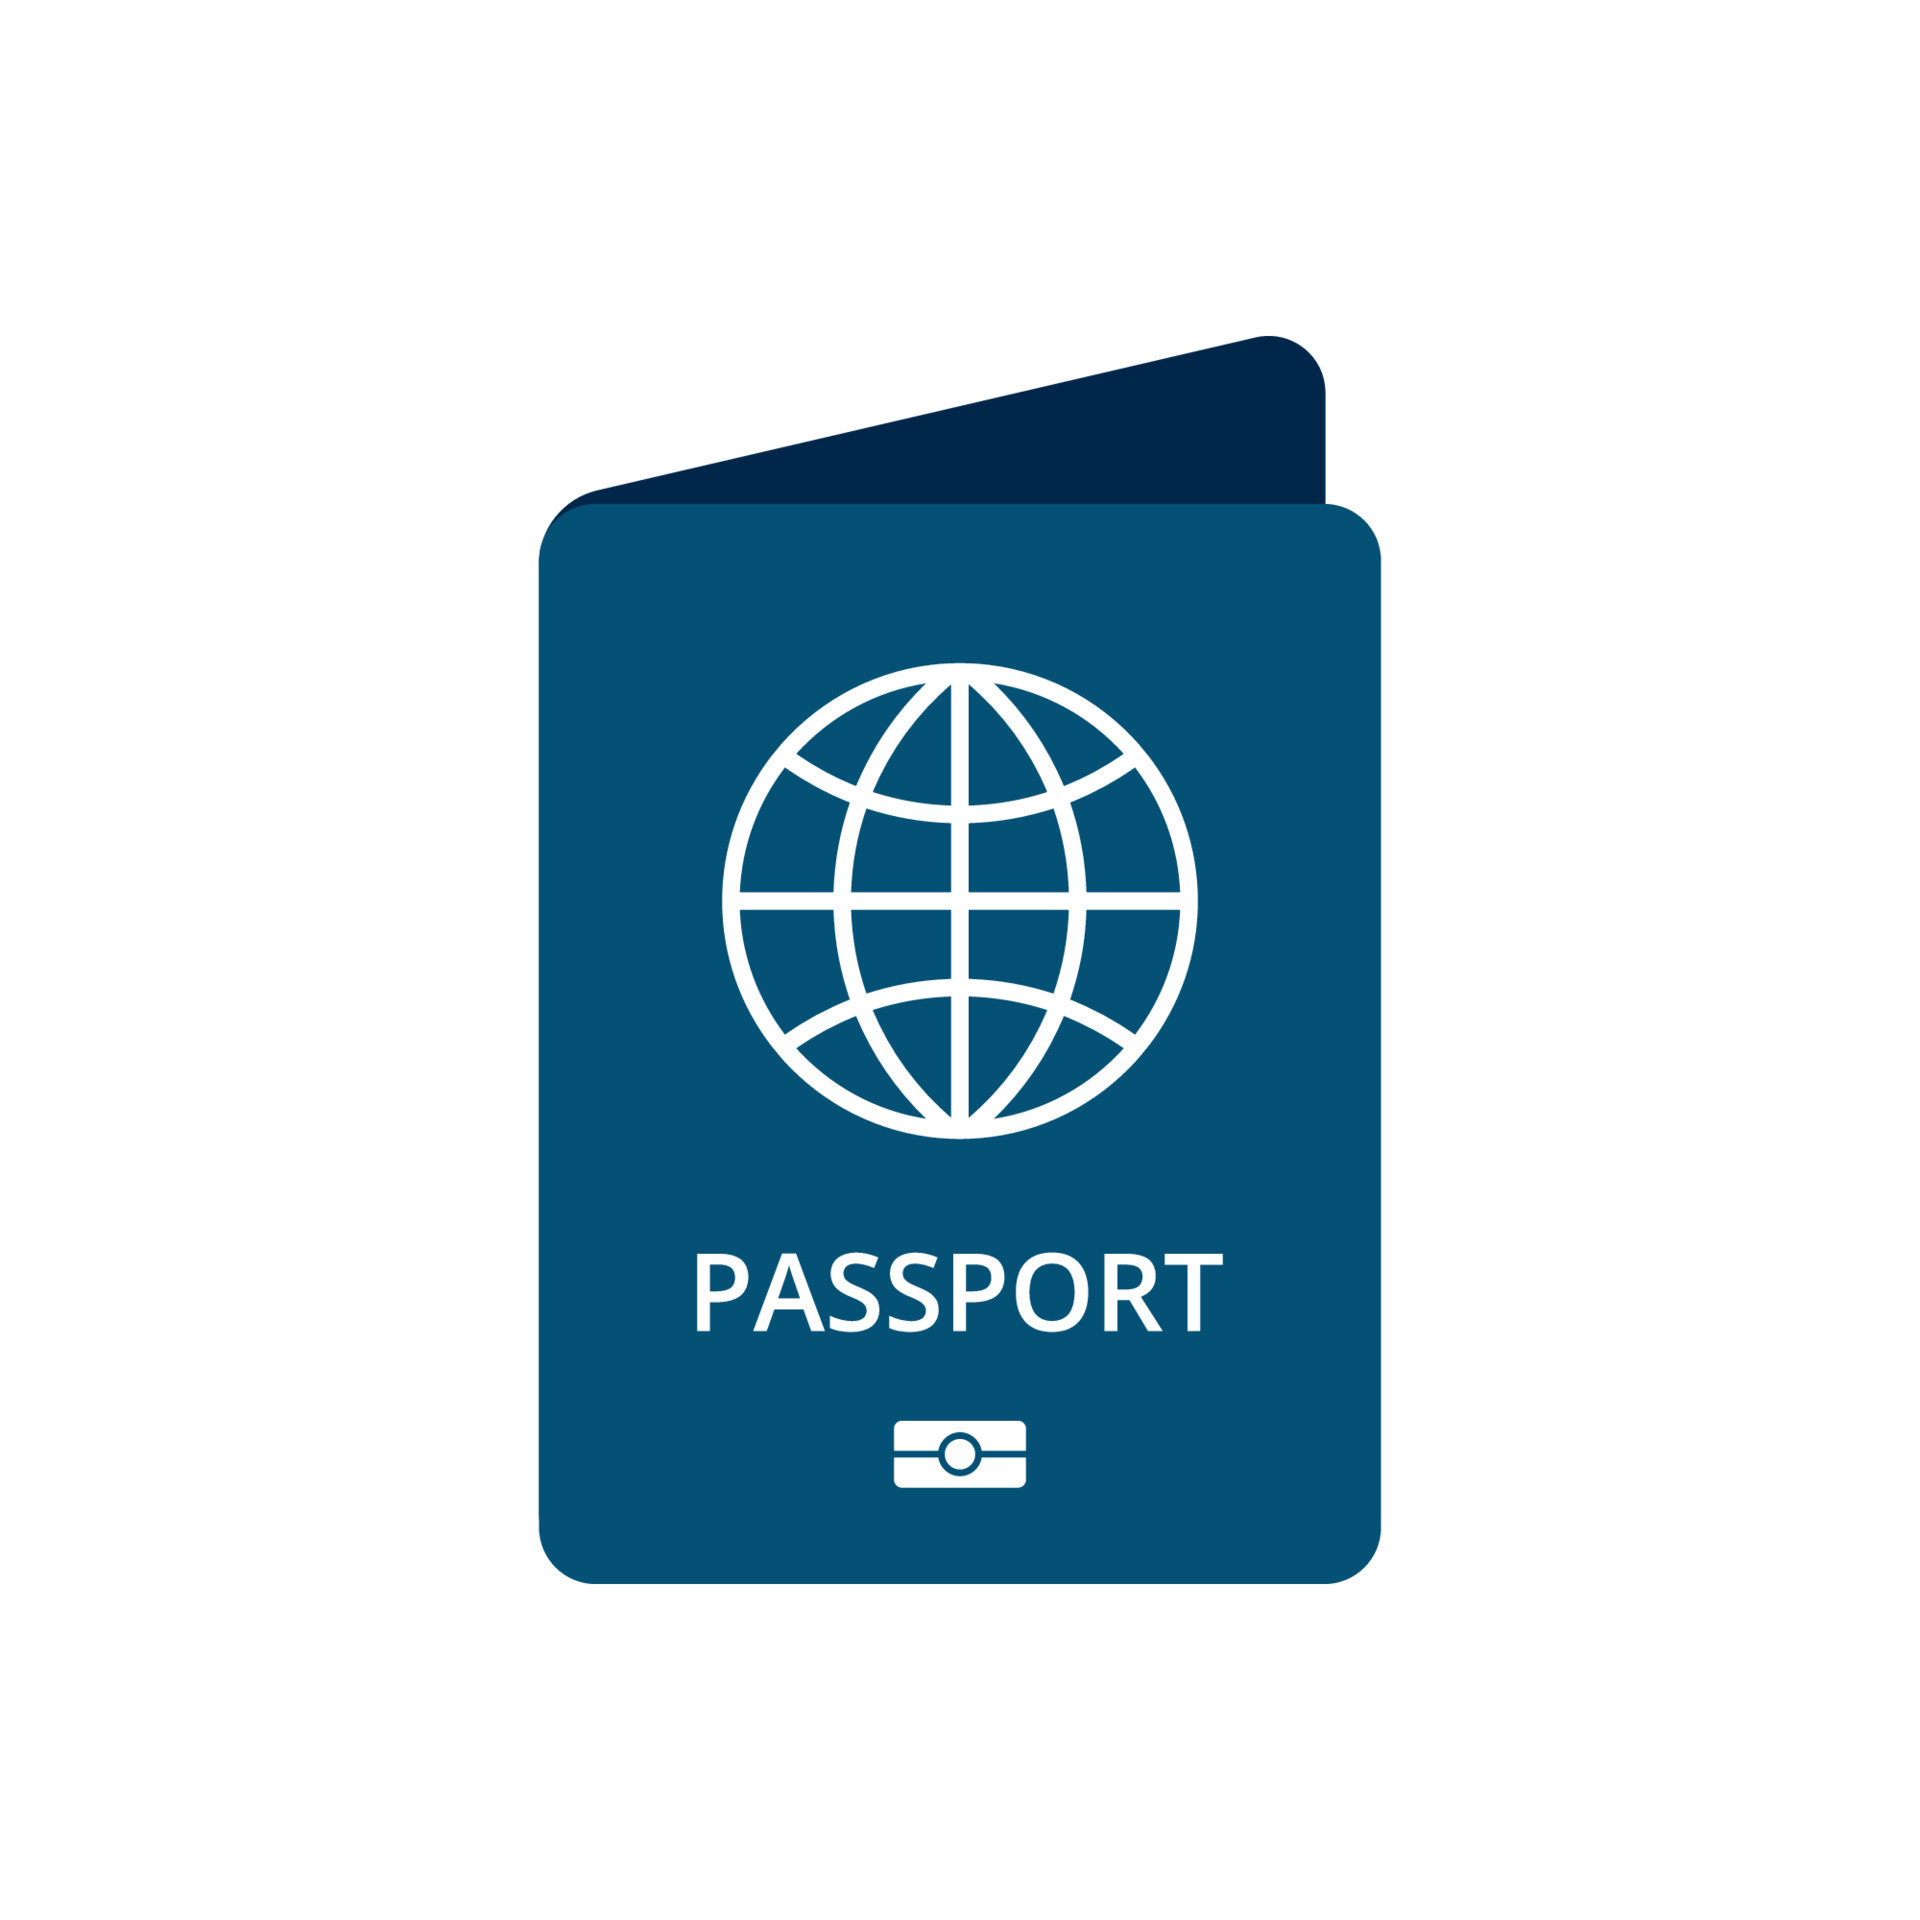 Bạn đang cần một tài nguyên hữu ích về vector hộ chiếu để hoàn thành dự án của mình? Đừng bỏ lỡ hình ảnh liên quan đến Passport vector - một tài nguyên vô cùng hữu ích và tiện lợi cho người dùng!